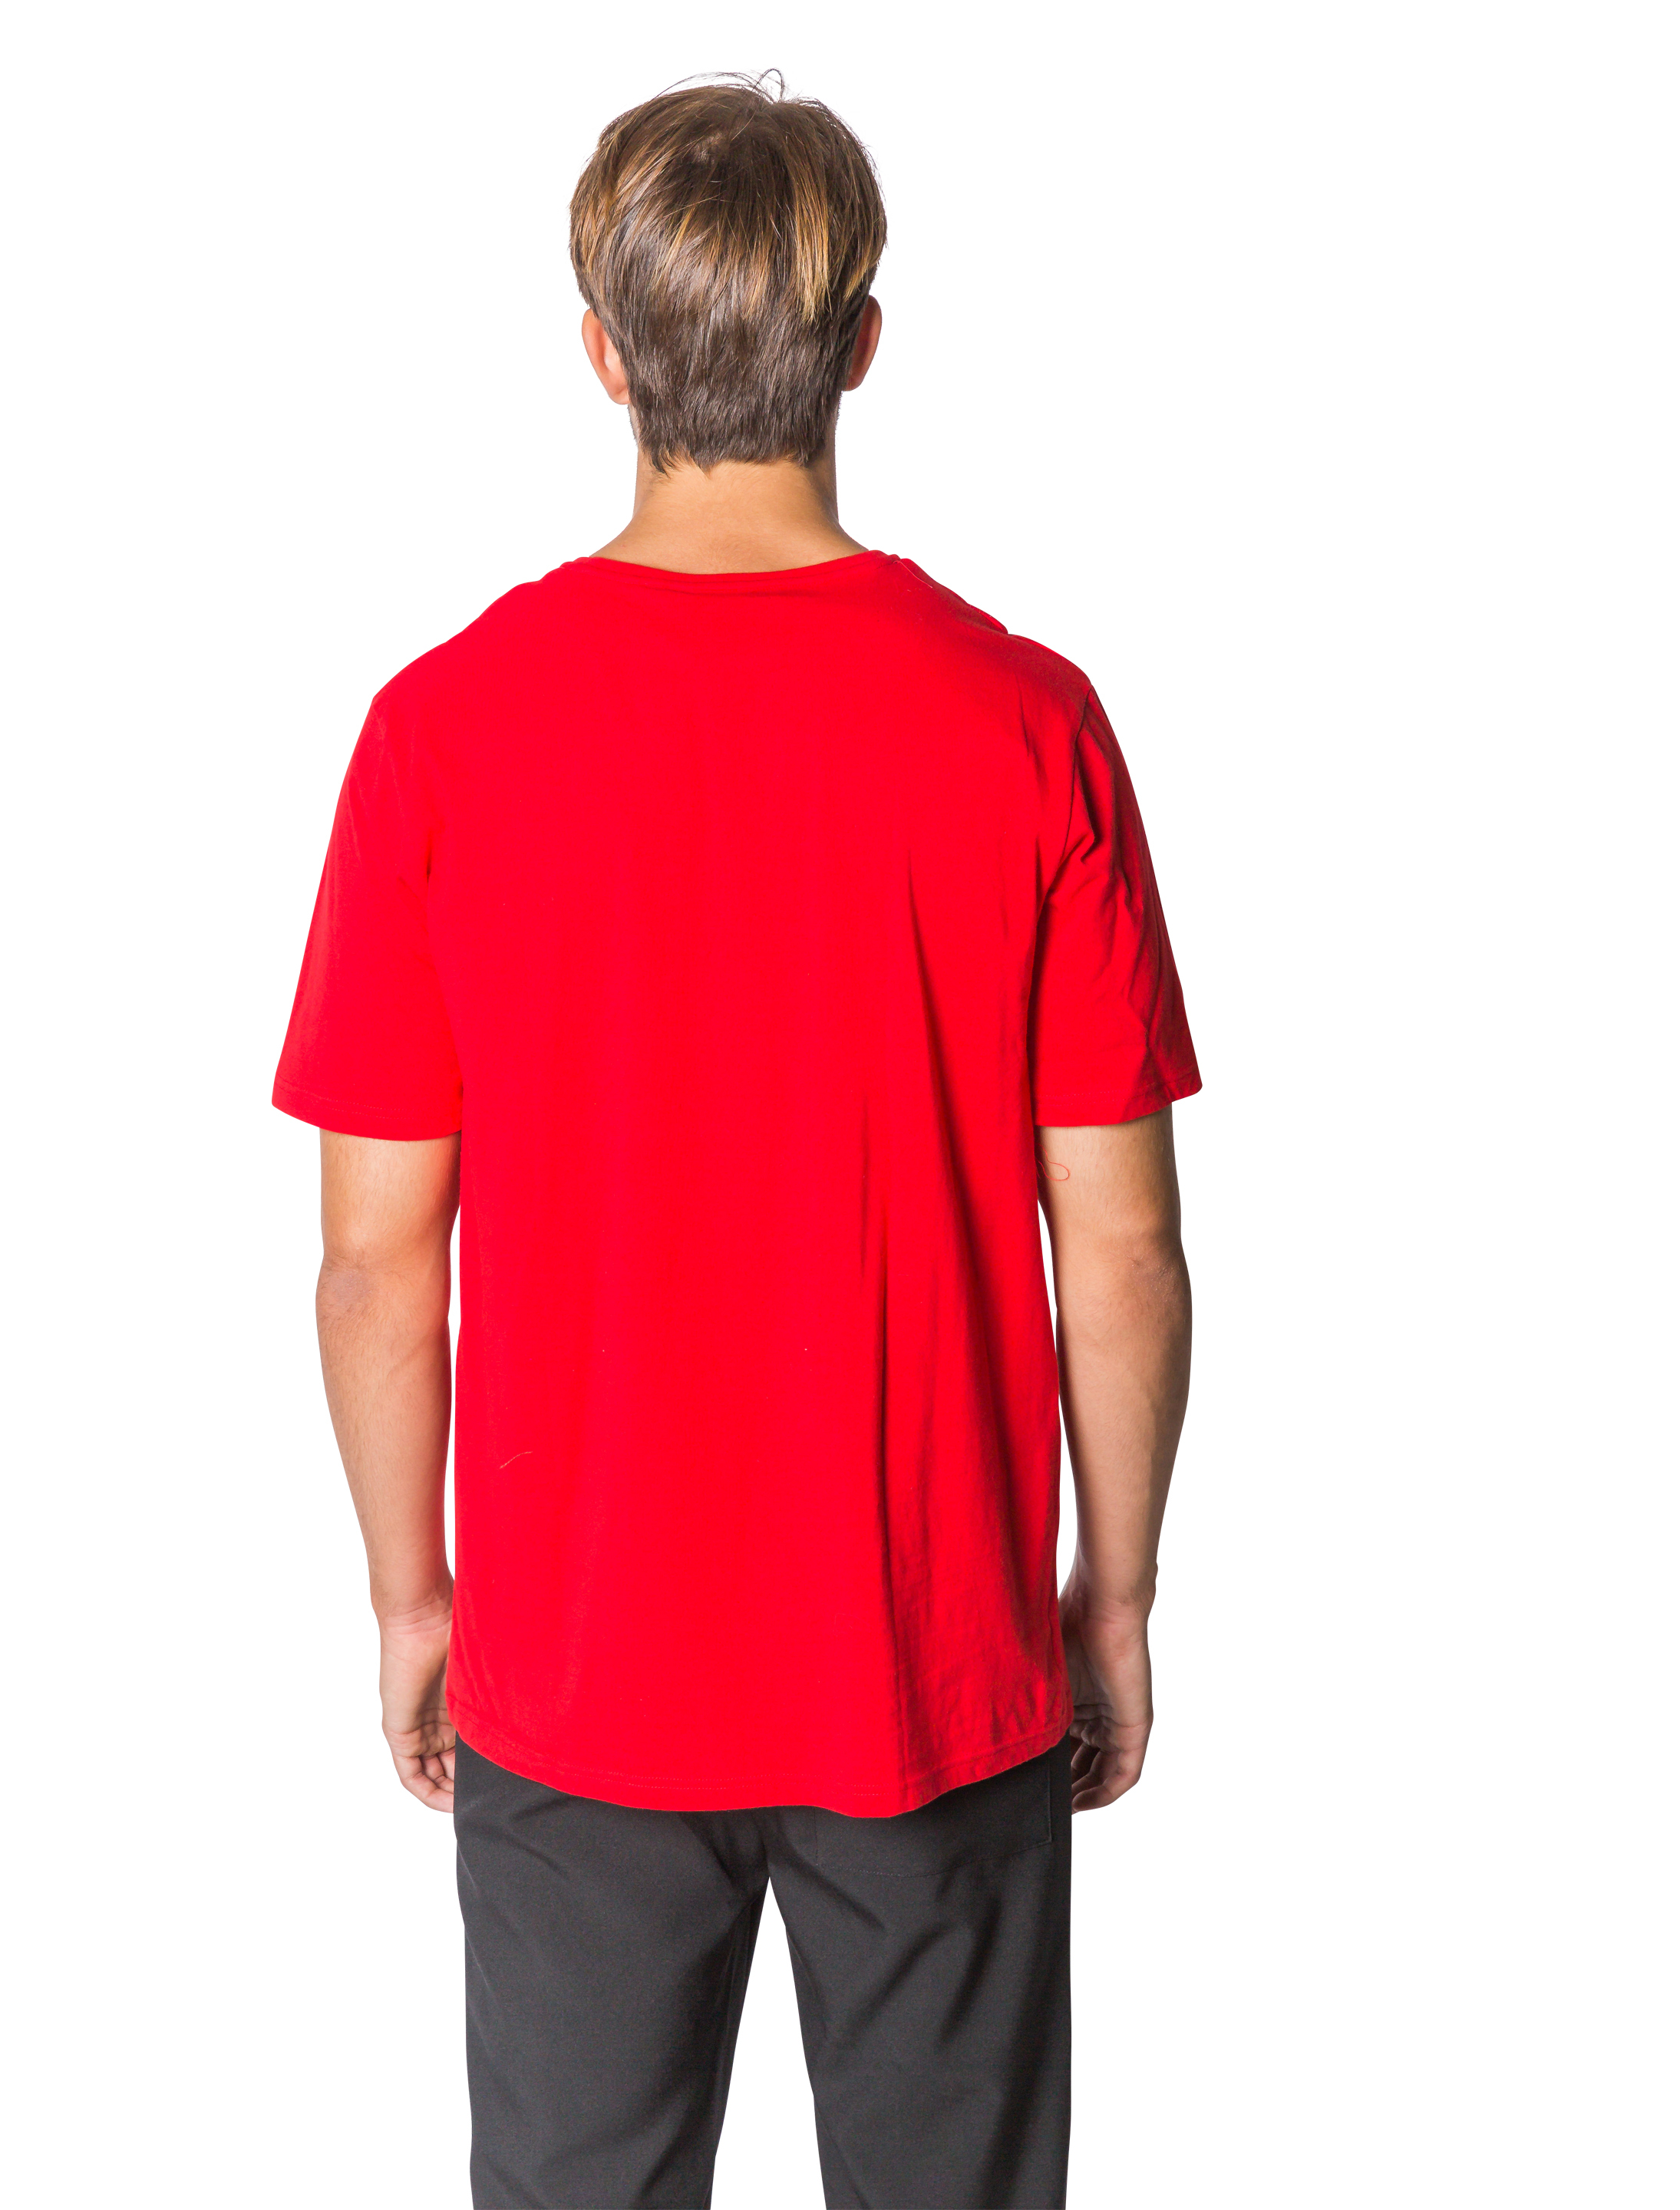 T-Shirt Herren rot S